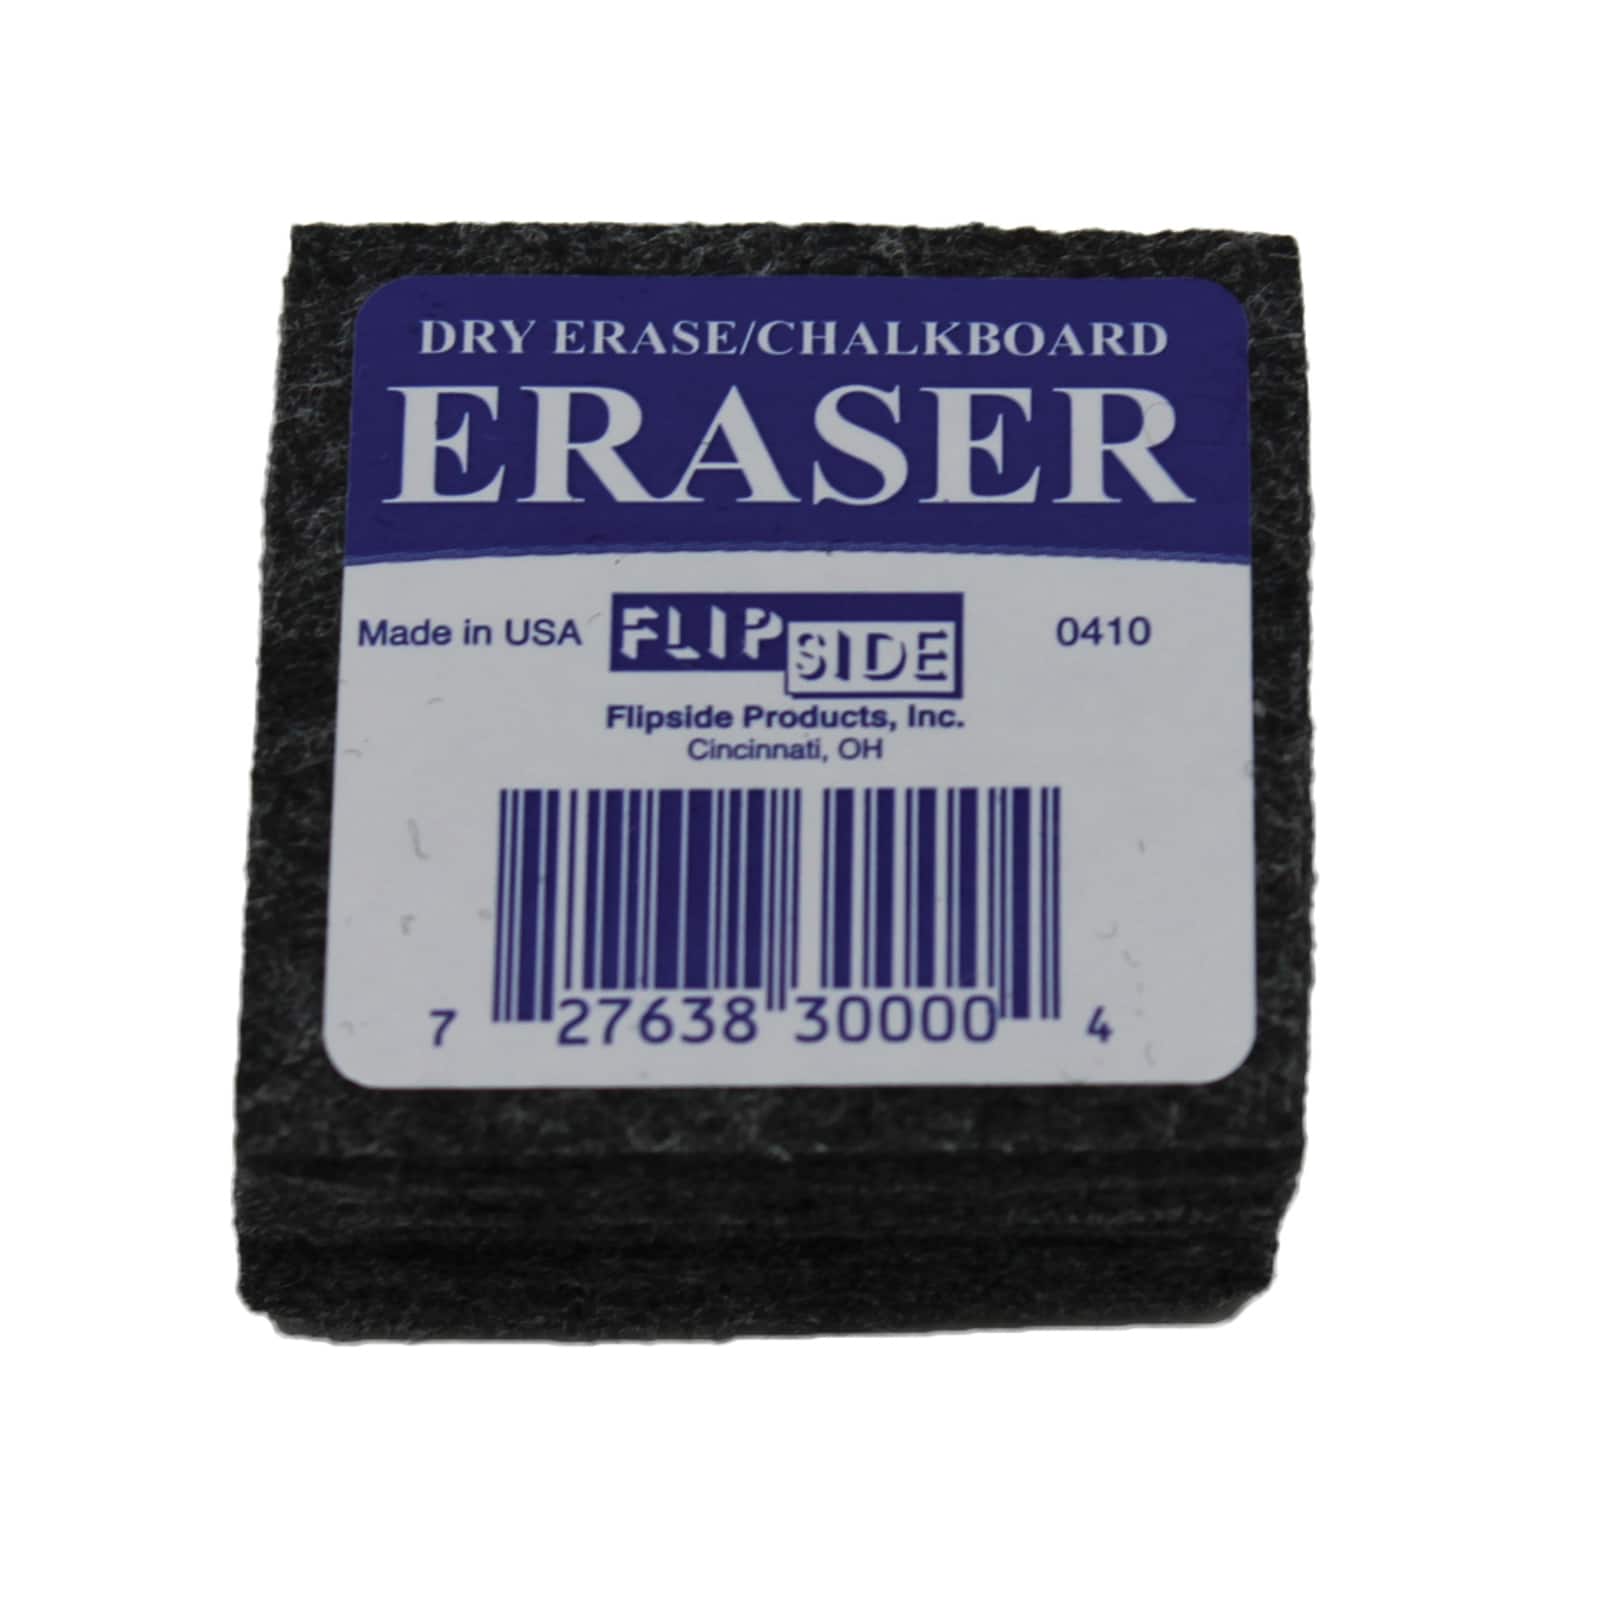 Student Dry Erase &#x26; Chalkboard Eraser 2 Count, 12 Packs